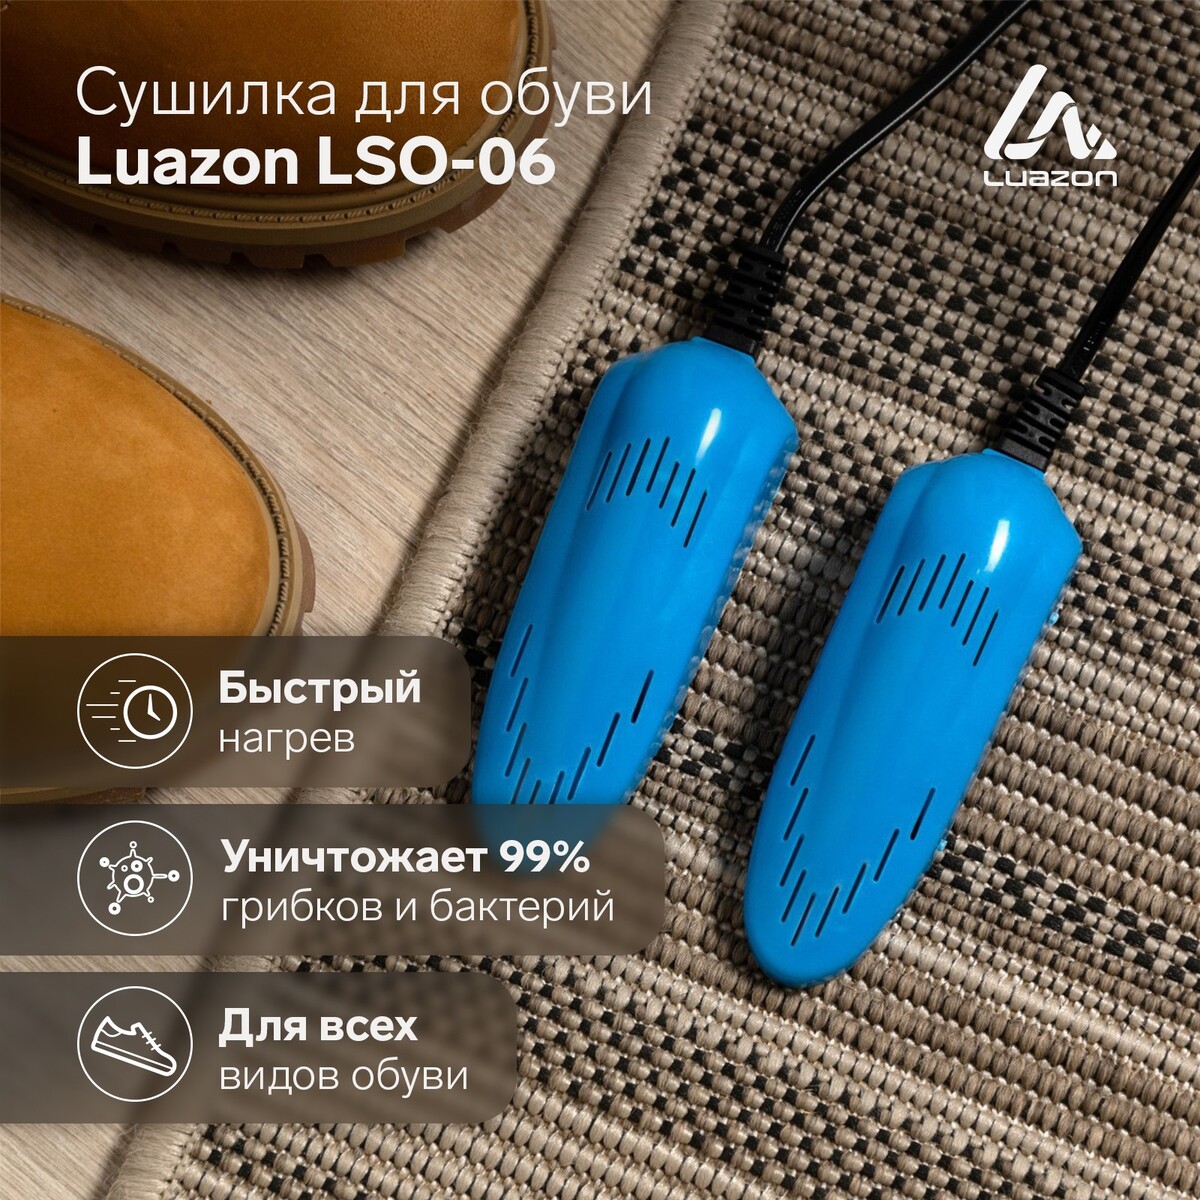 Сушилка для обуви luazon lso-08, 11 см, детская, 12 вт, индикатор, синяя timson сушилка для обуви противогрибковая